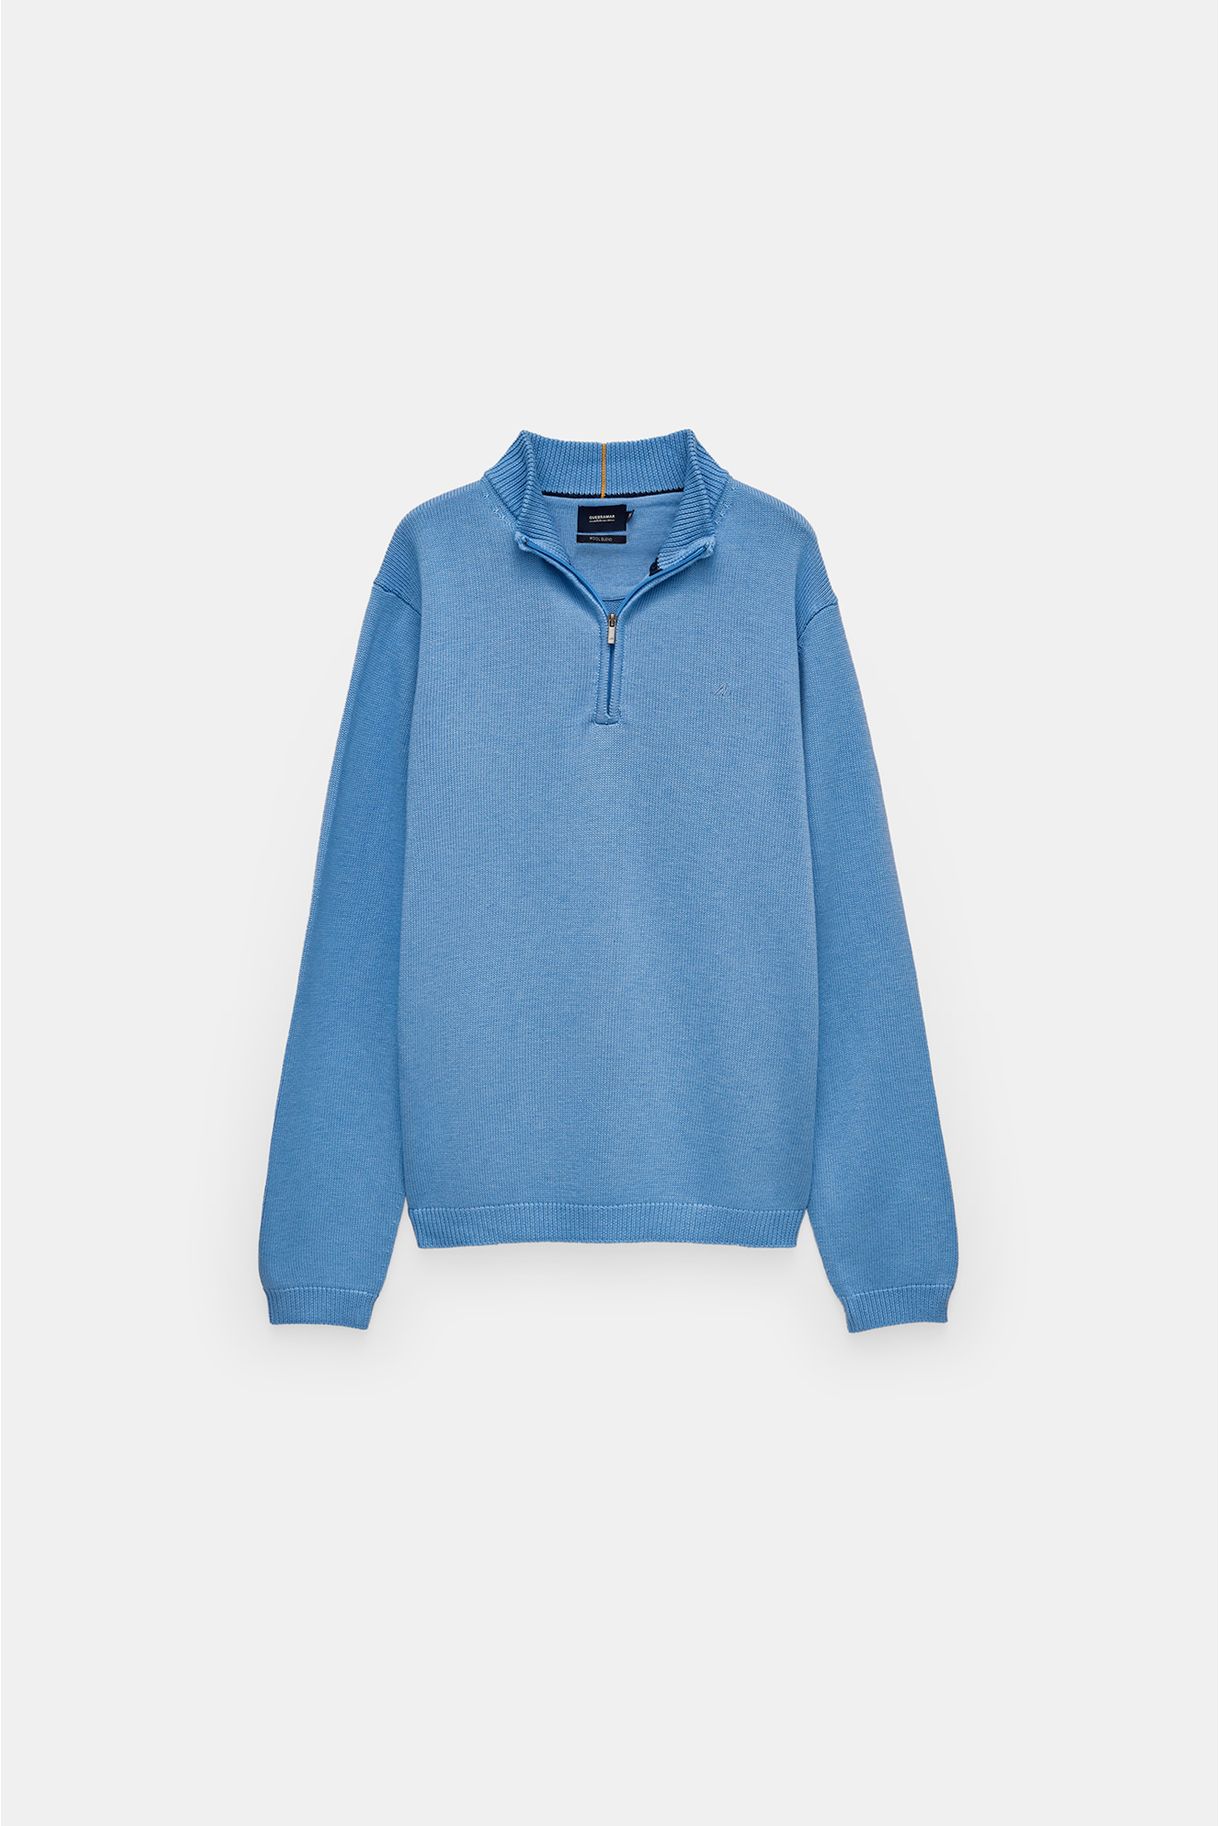 Wool 1/2 zipper sweater